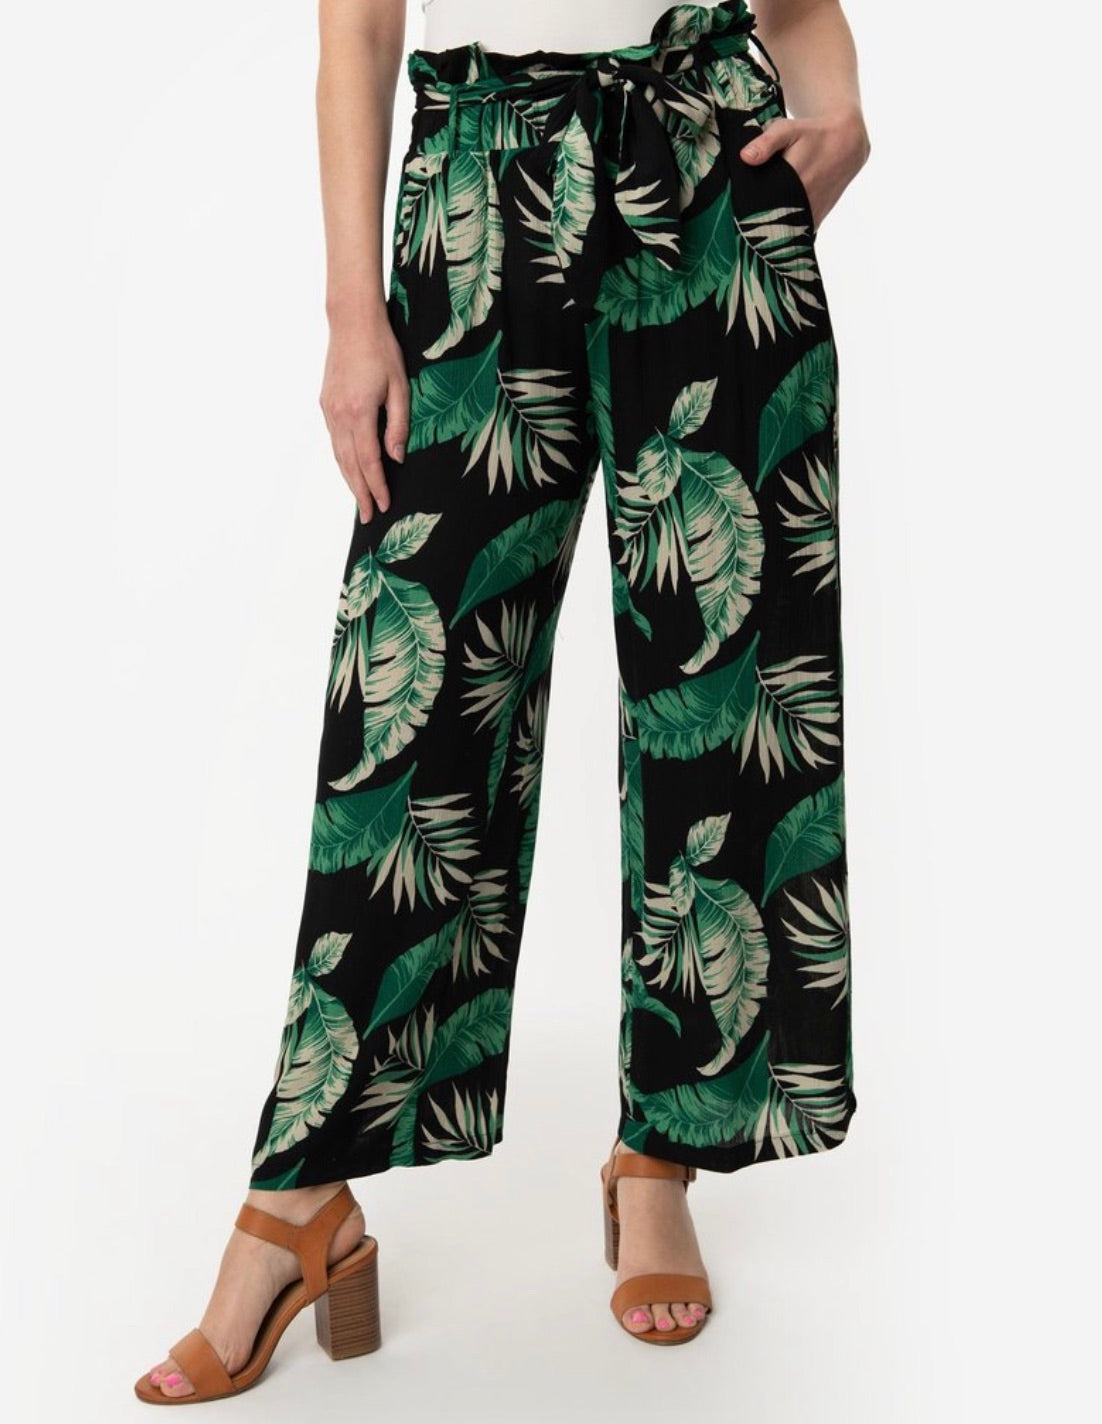 Tropical Nights Lightweight Pants,Pants - Dirt Road Divas Boutique